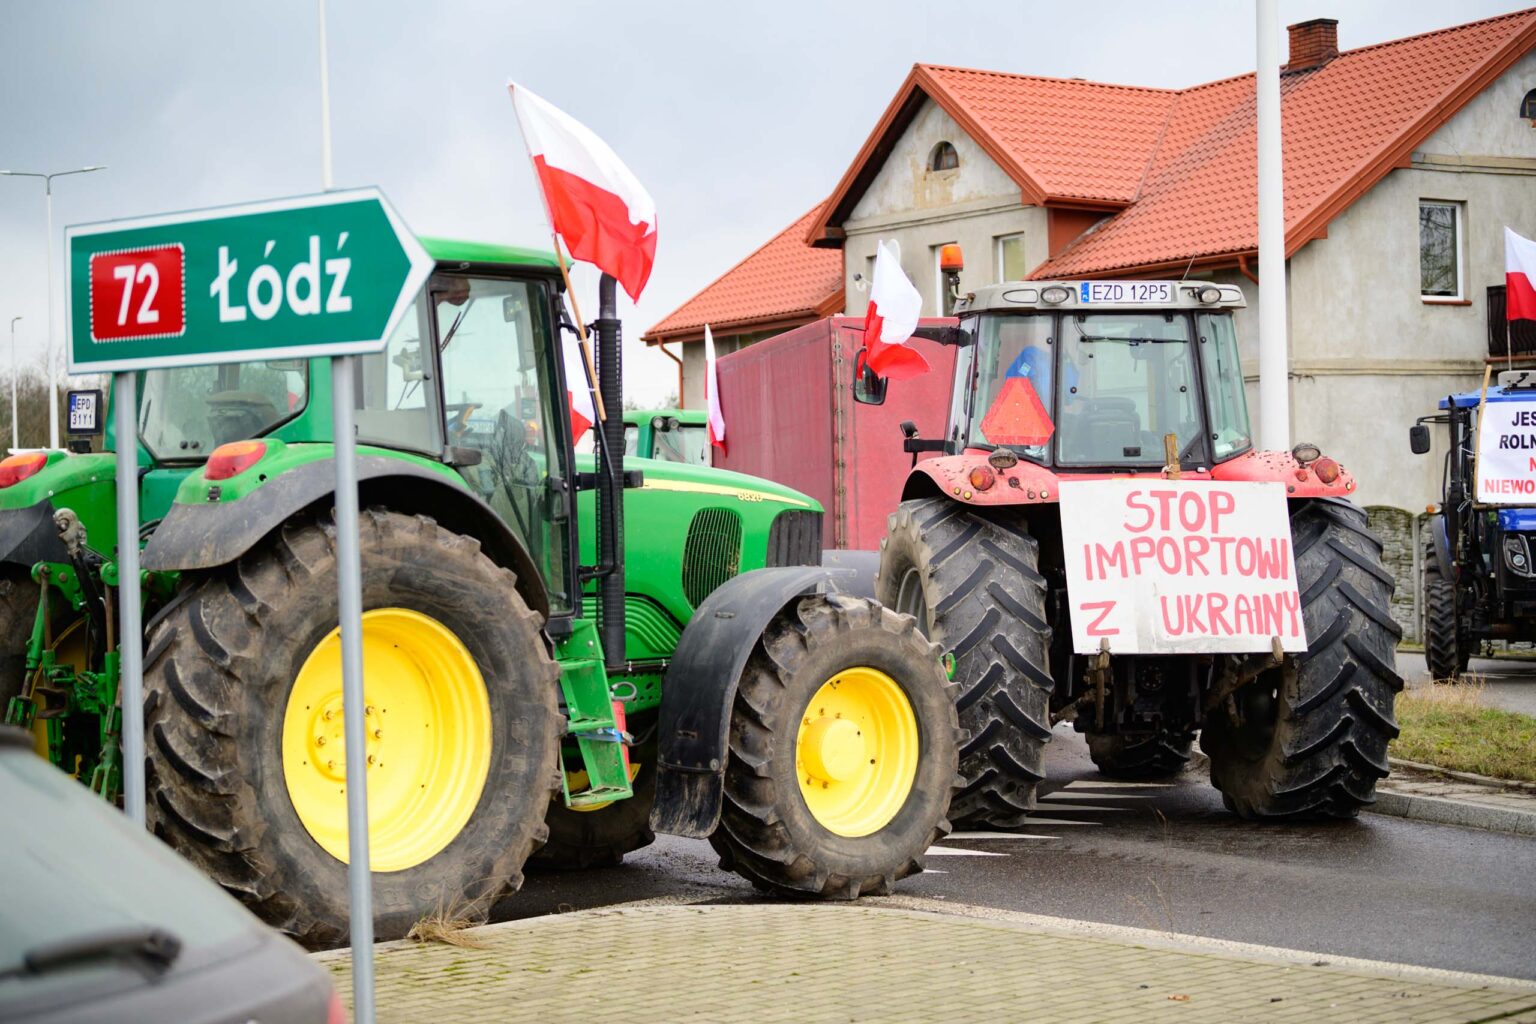 Protest rolniczy w Poddebicach i spotkanie z Wojewoda 62